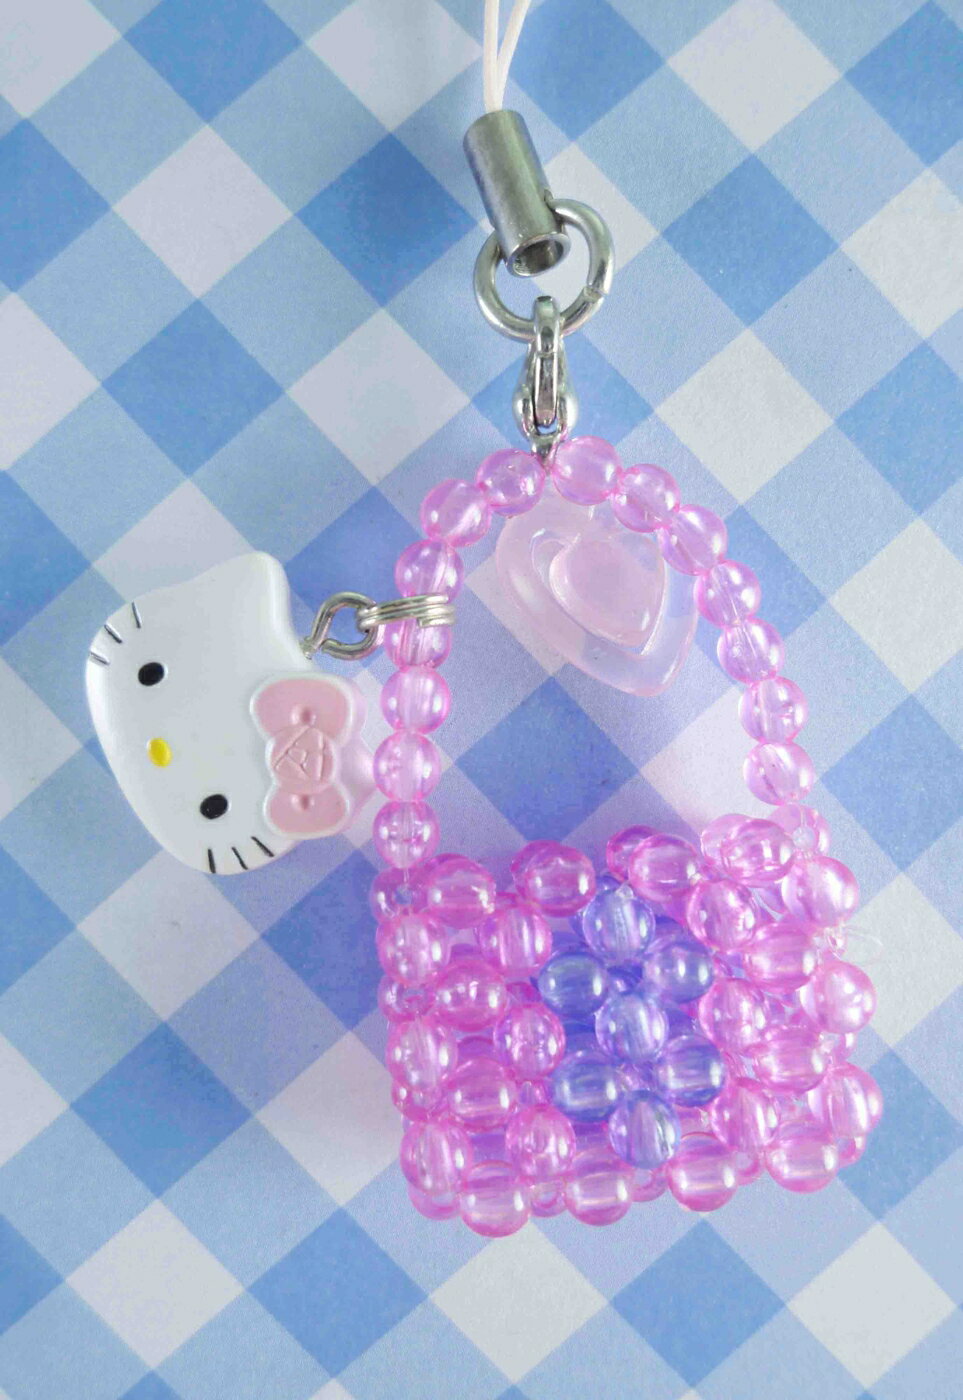 【震撼精品百貨】Hello Kitty 凱蒂貓 手機吊飾-粉珠袋子 震撼日式精品百貨